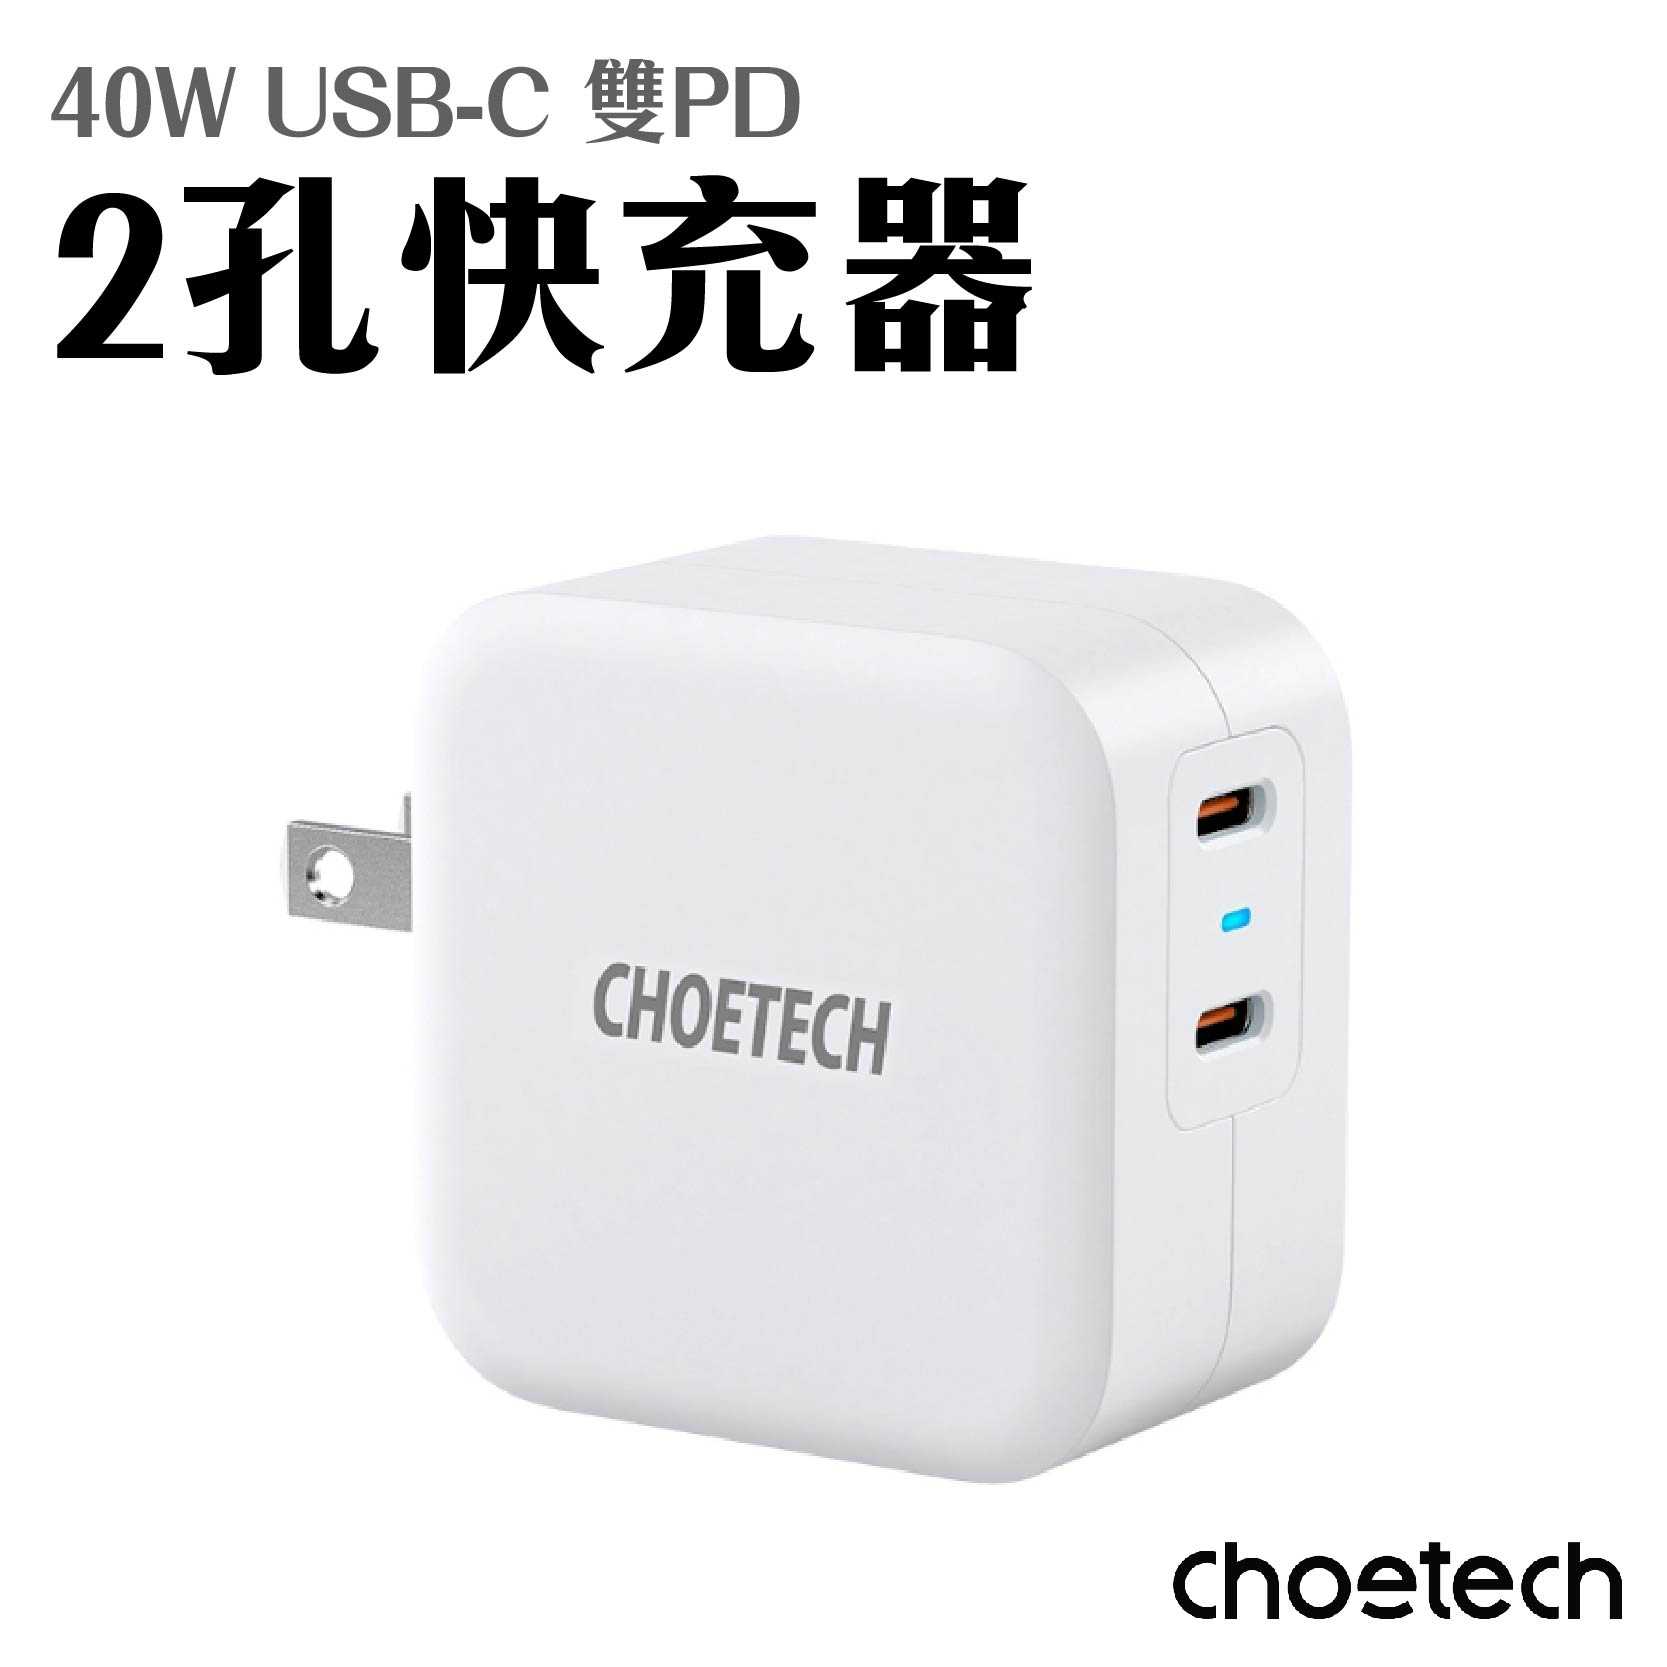 現貨 1年保固『CHOETECH 40W 雙USB-C PD 2孔快速充電器』PD6009 IPHONE